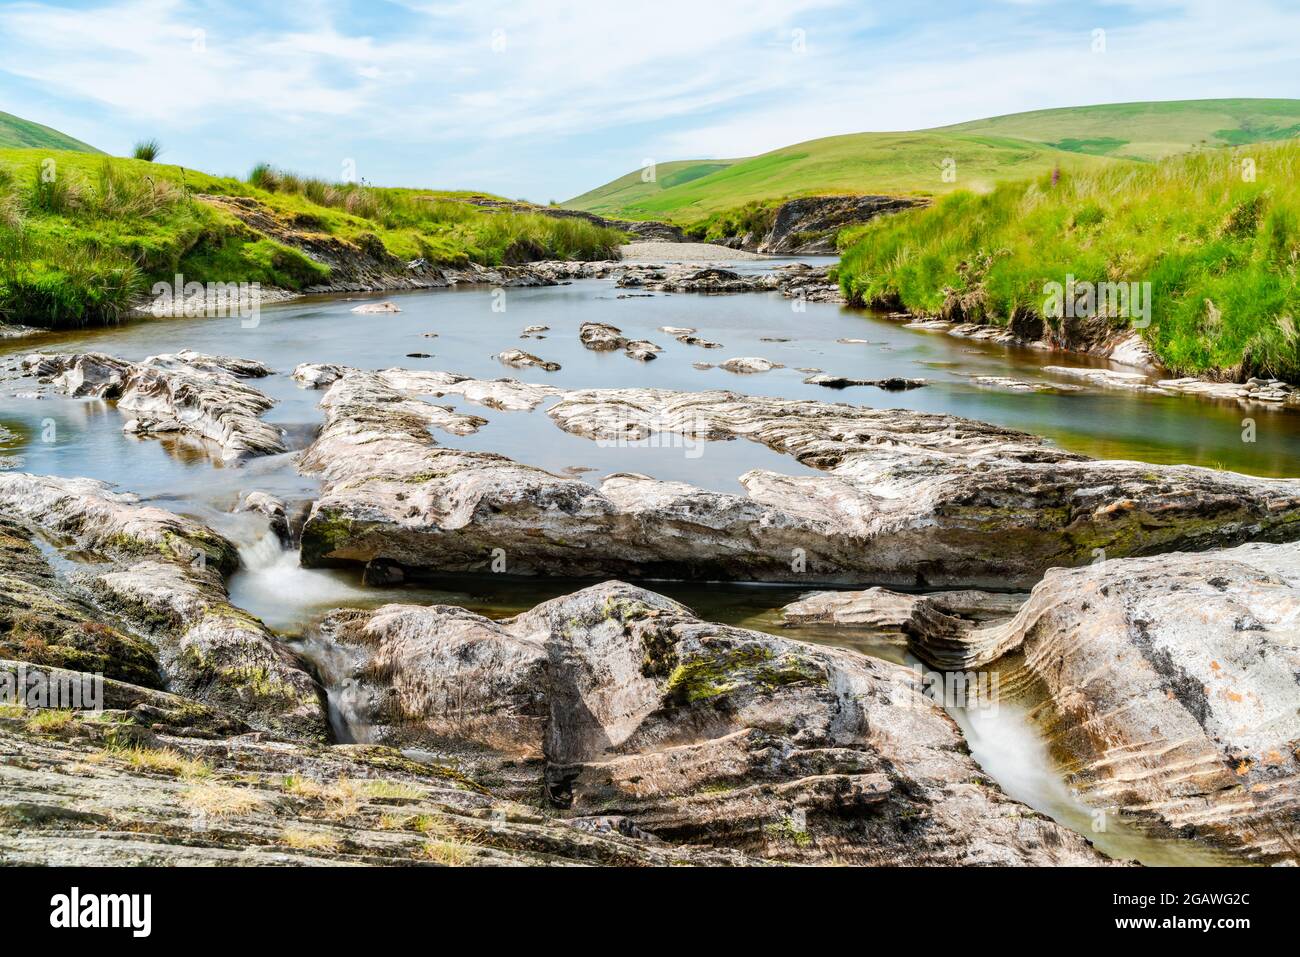 Vue sur la magnifique campagne galloise avec la rivière Afon Elan dans la vallée d'Elan, Powys, pays de Galles. Effet de longue exposition. Banque D'Images